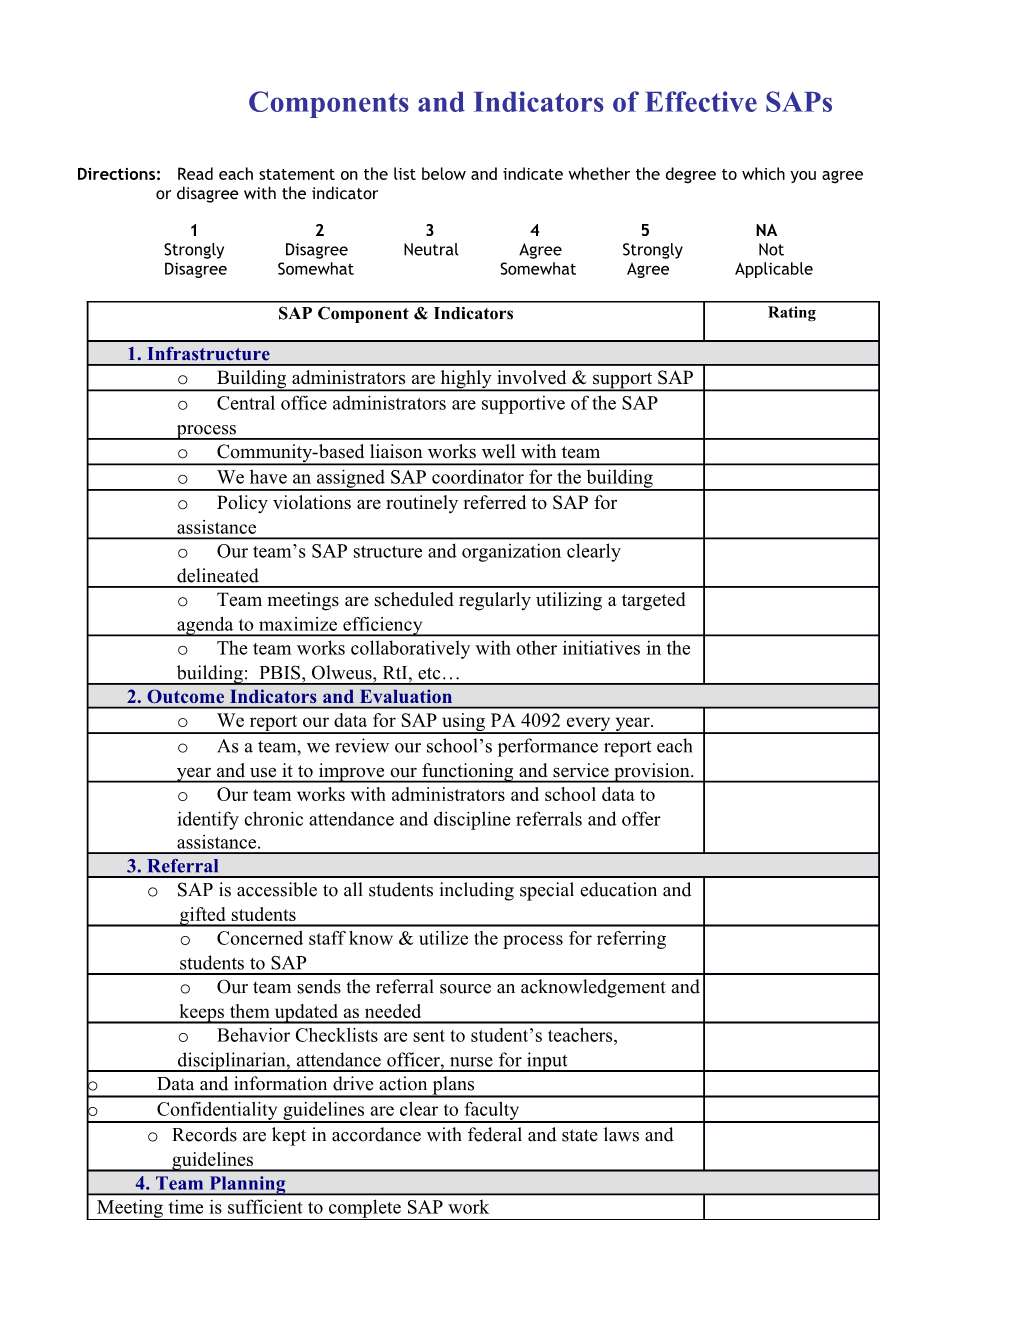 SAP Component & Indicators